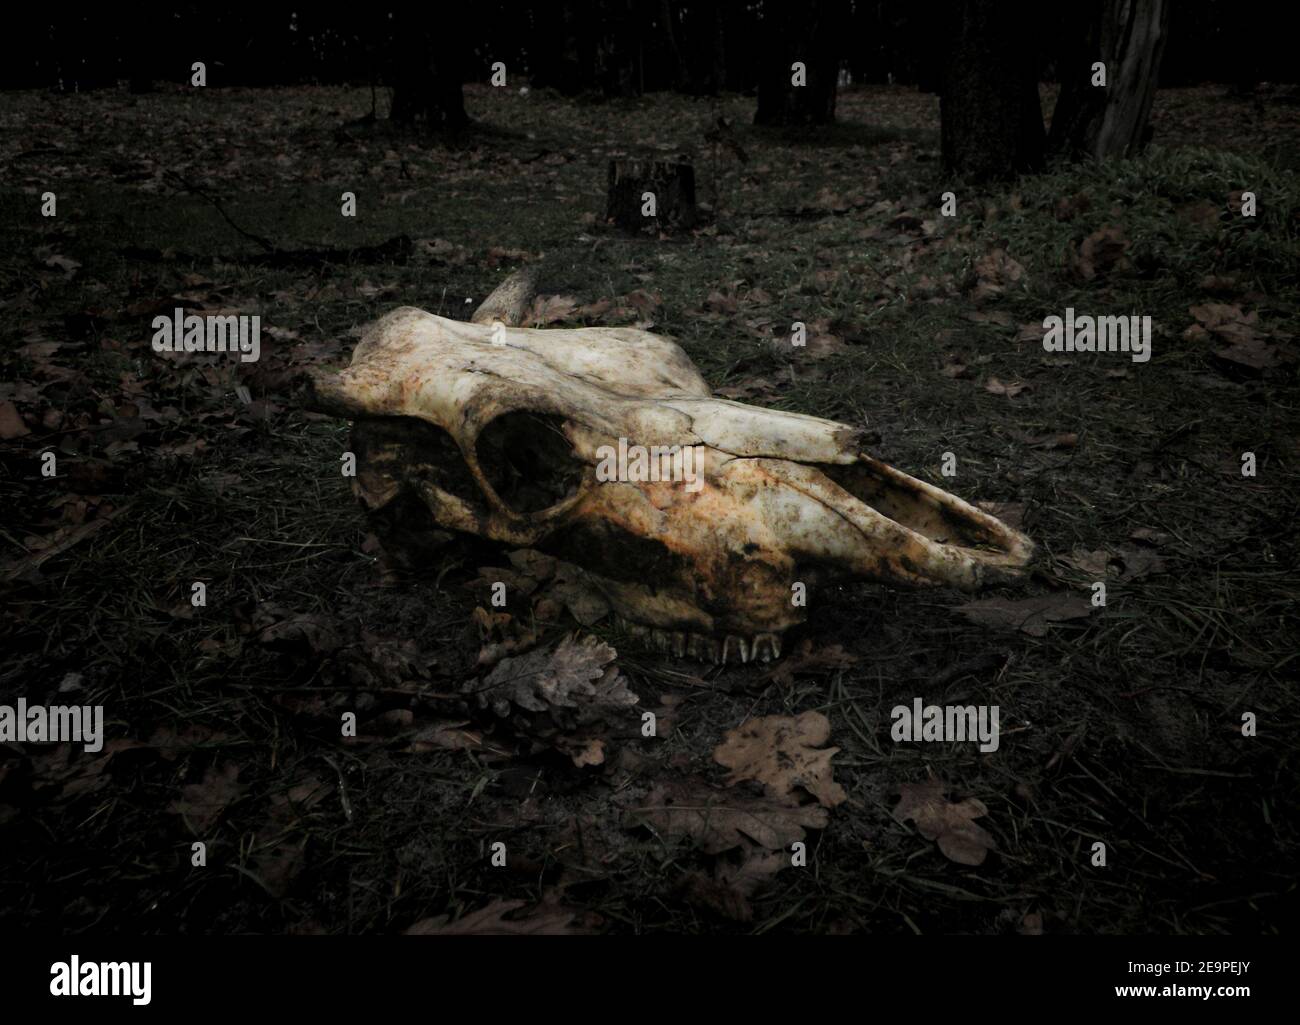 Un cranio di una mucca morta uccisa nella foresta che giace a terra in foglie. Concetto per il tuo design nello stile dell'orrore della morte, della transizione della vita Foto Stock